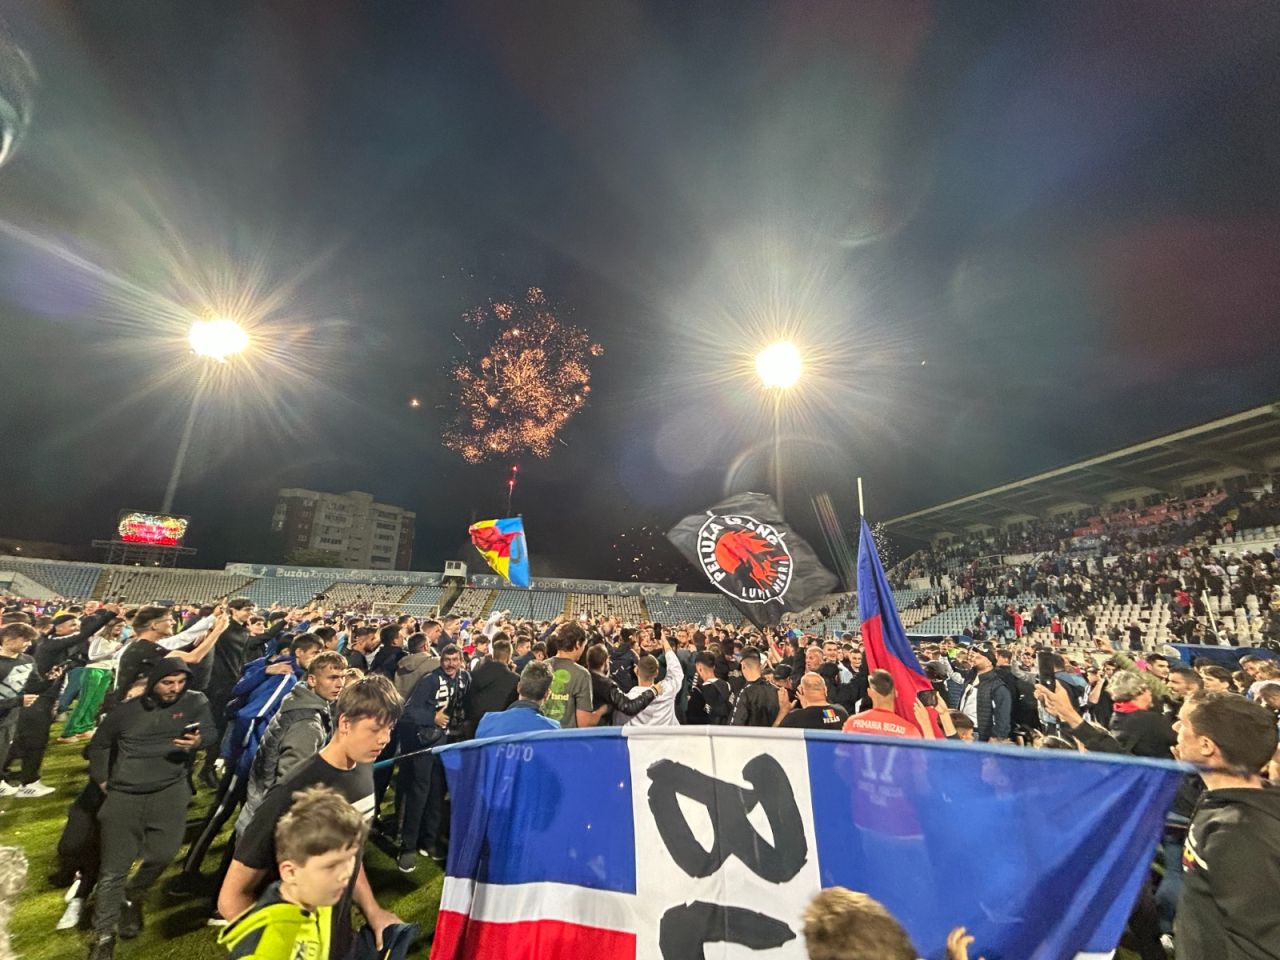 Sărbătoare la Buzău! Fotbaliștii s-au bucurat alături de fani în urma promovării istorice. Vali Dumitrache: ”Am muncit un an pentru asta”_3